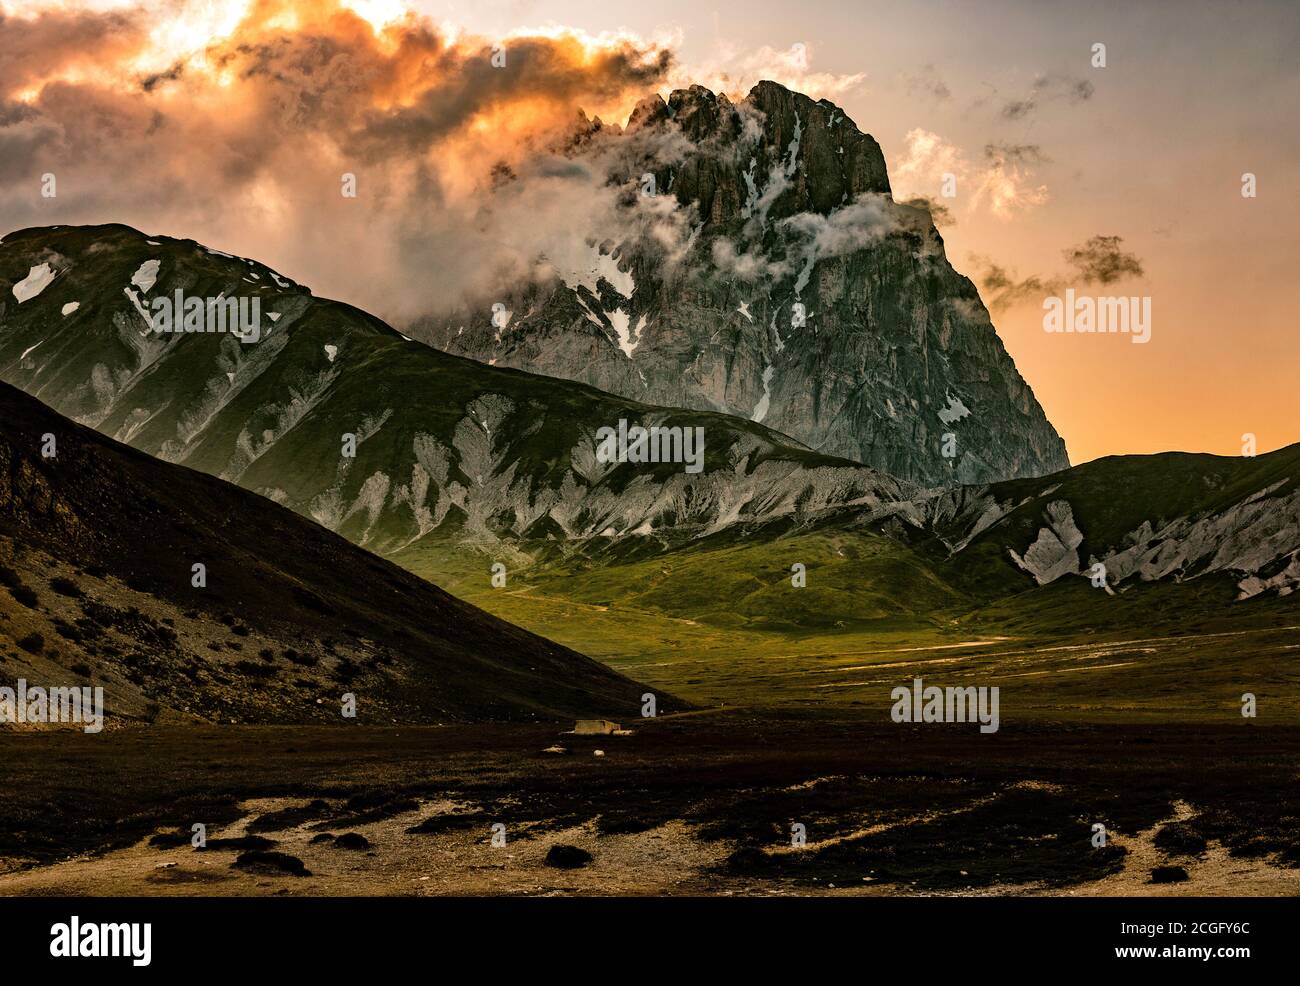 Parco Nazionale del Gran Sasso e Monti della Laga. Tramonto spettacolare sul Corno Grande. Abruzzo, Italia, Europa Foto Stock